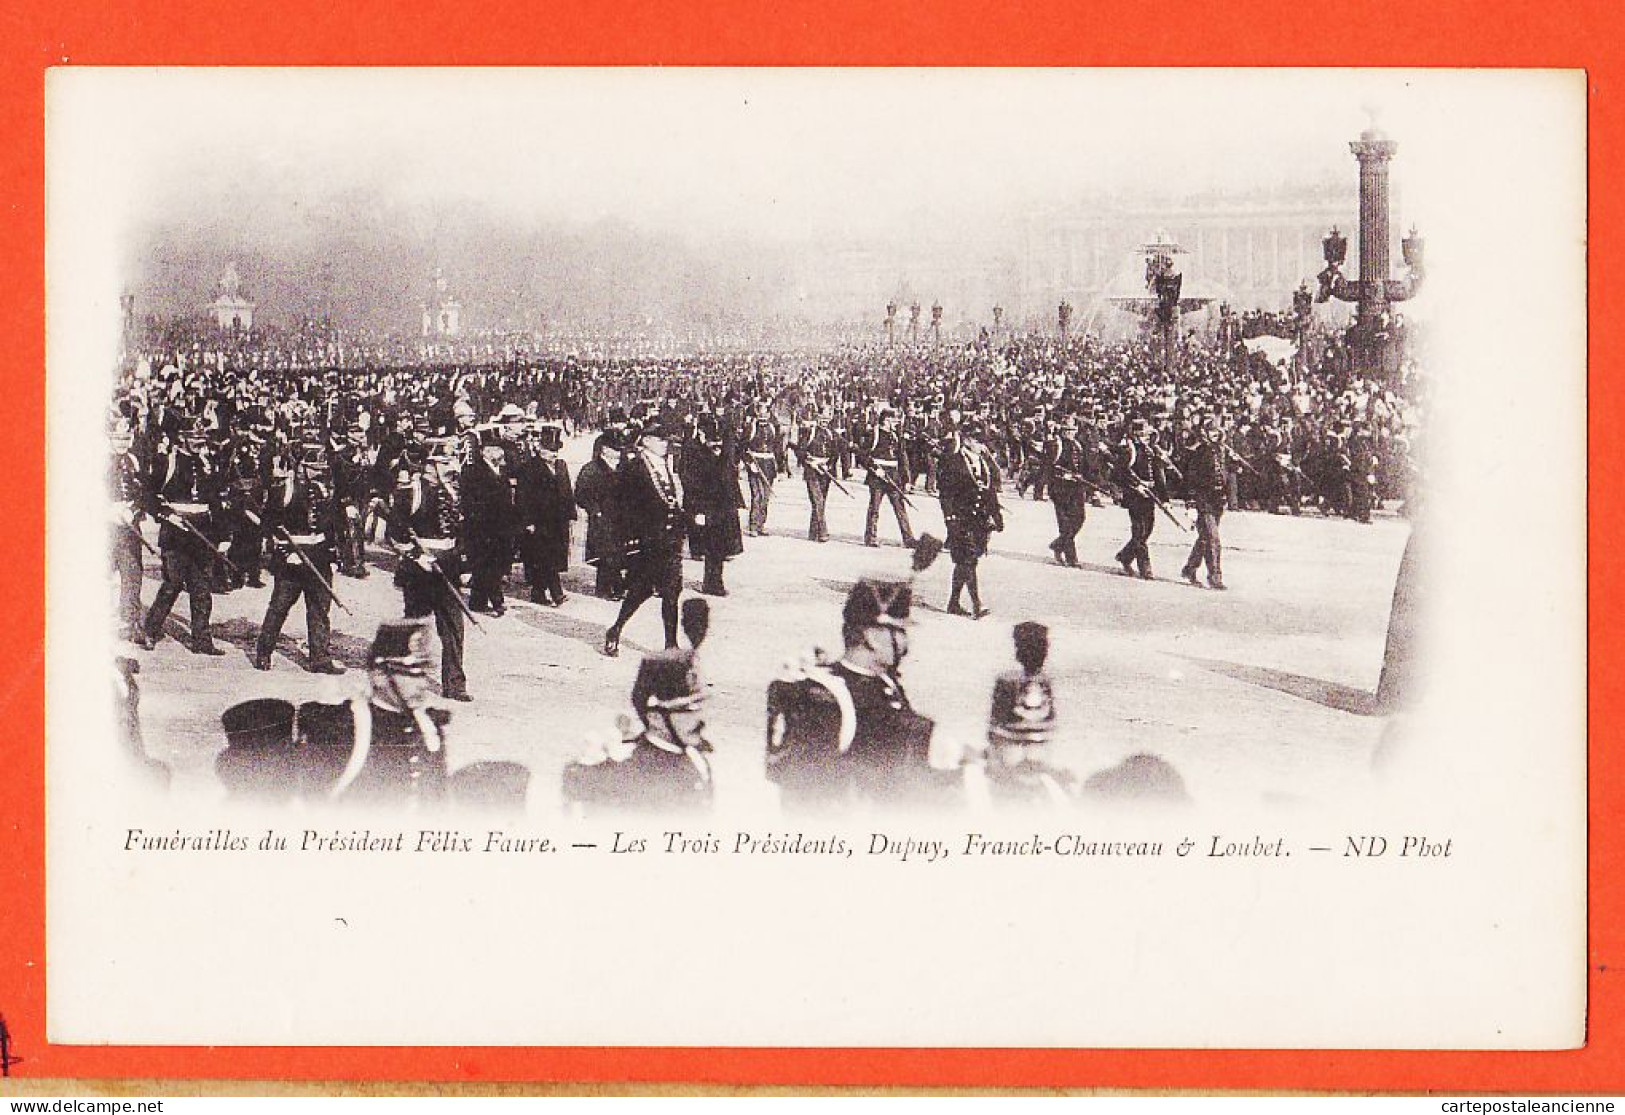 29106 / ⭐ Peu Commun PARIS 23 FEVRIER 1899 Funerailles Président FELIX FAURE 3 Présidents DUPUY FRANCK-CHAUVEAU LOUBET  - Beerdigungen